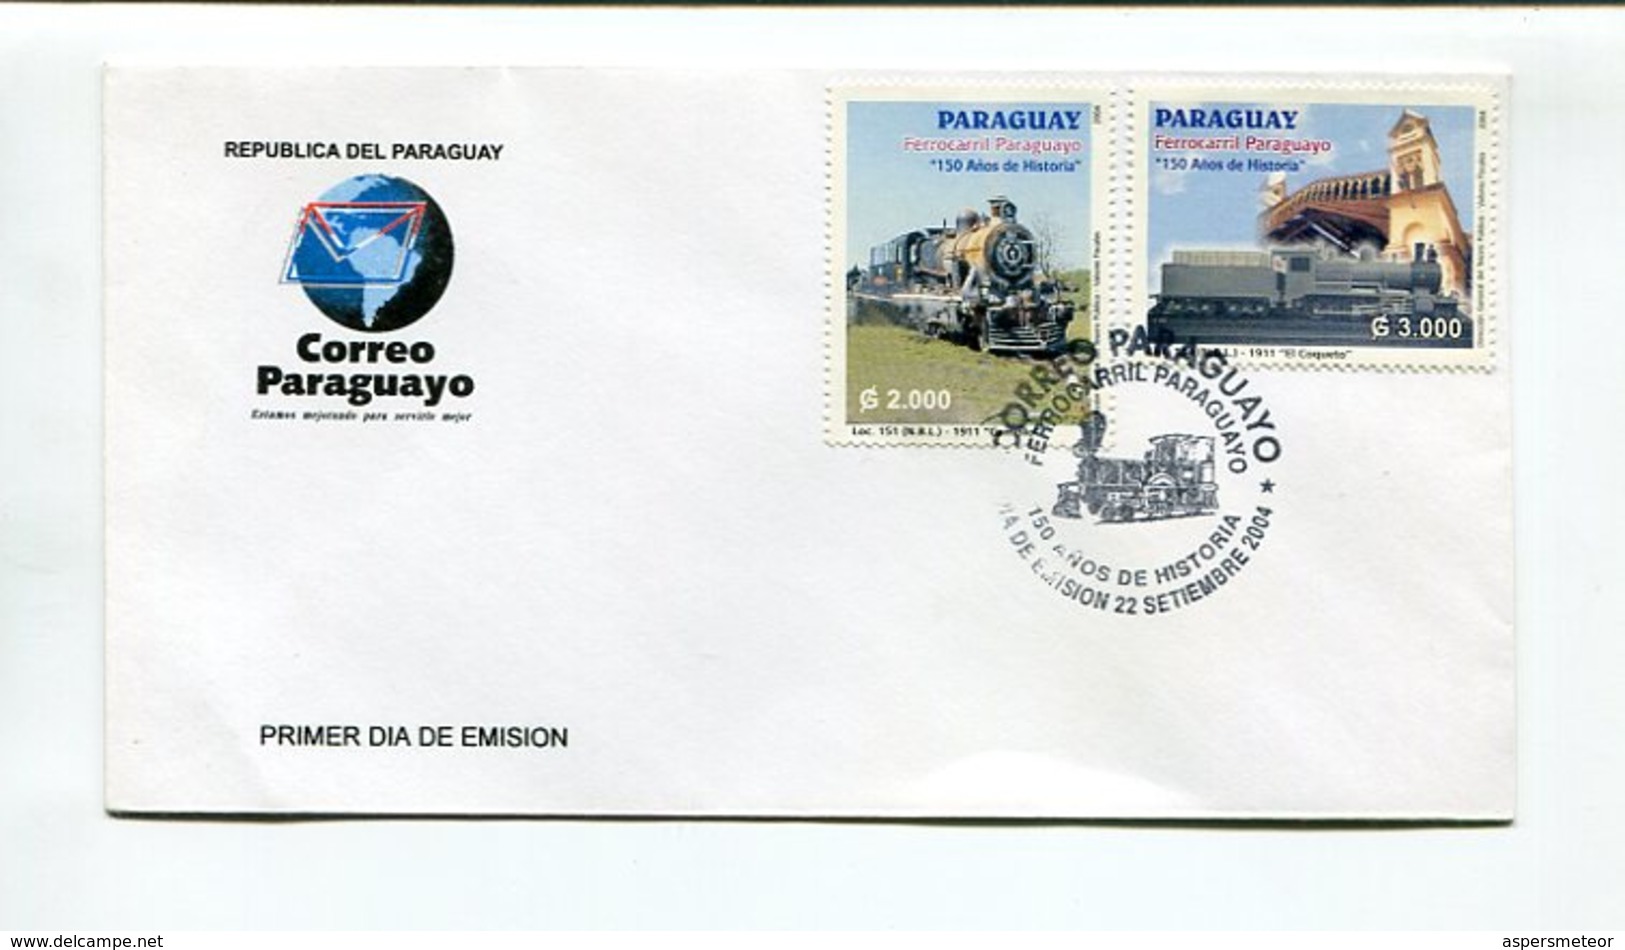 FERROCARRIL PARAGUAYO, 150 AÑOS DE HISTORIA. PARAGUAY 2004 ENVELOPE FDC, SOBRE DIA DE EMISION - LILHU - Paraguay